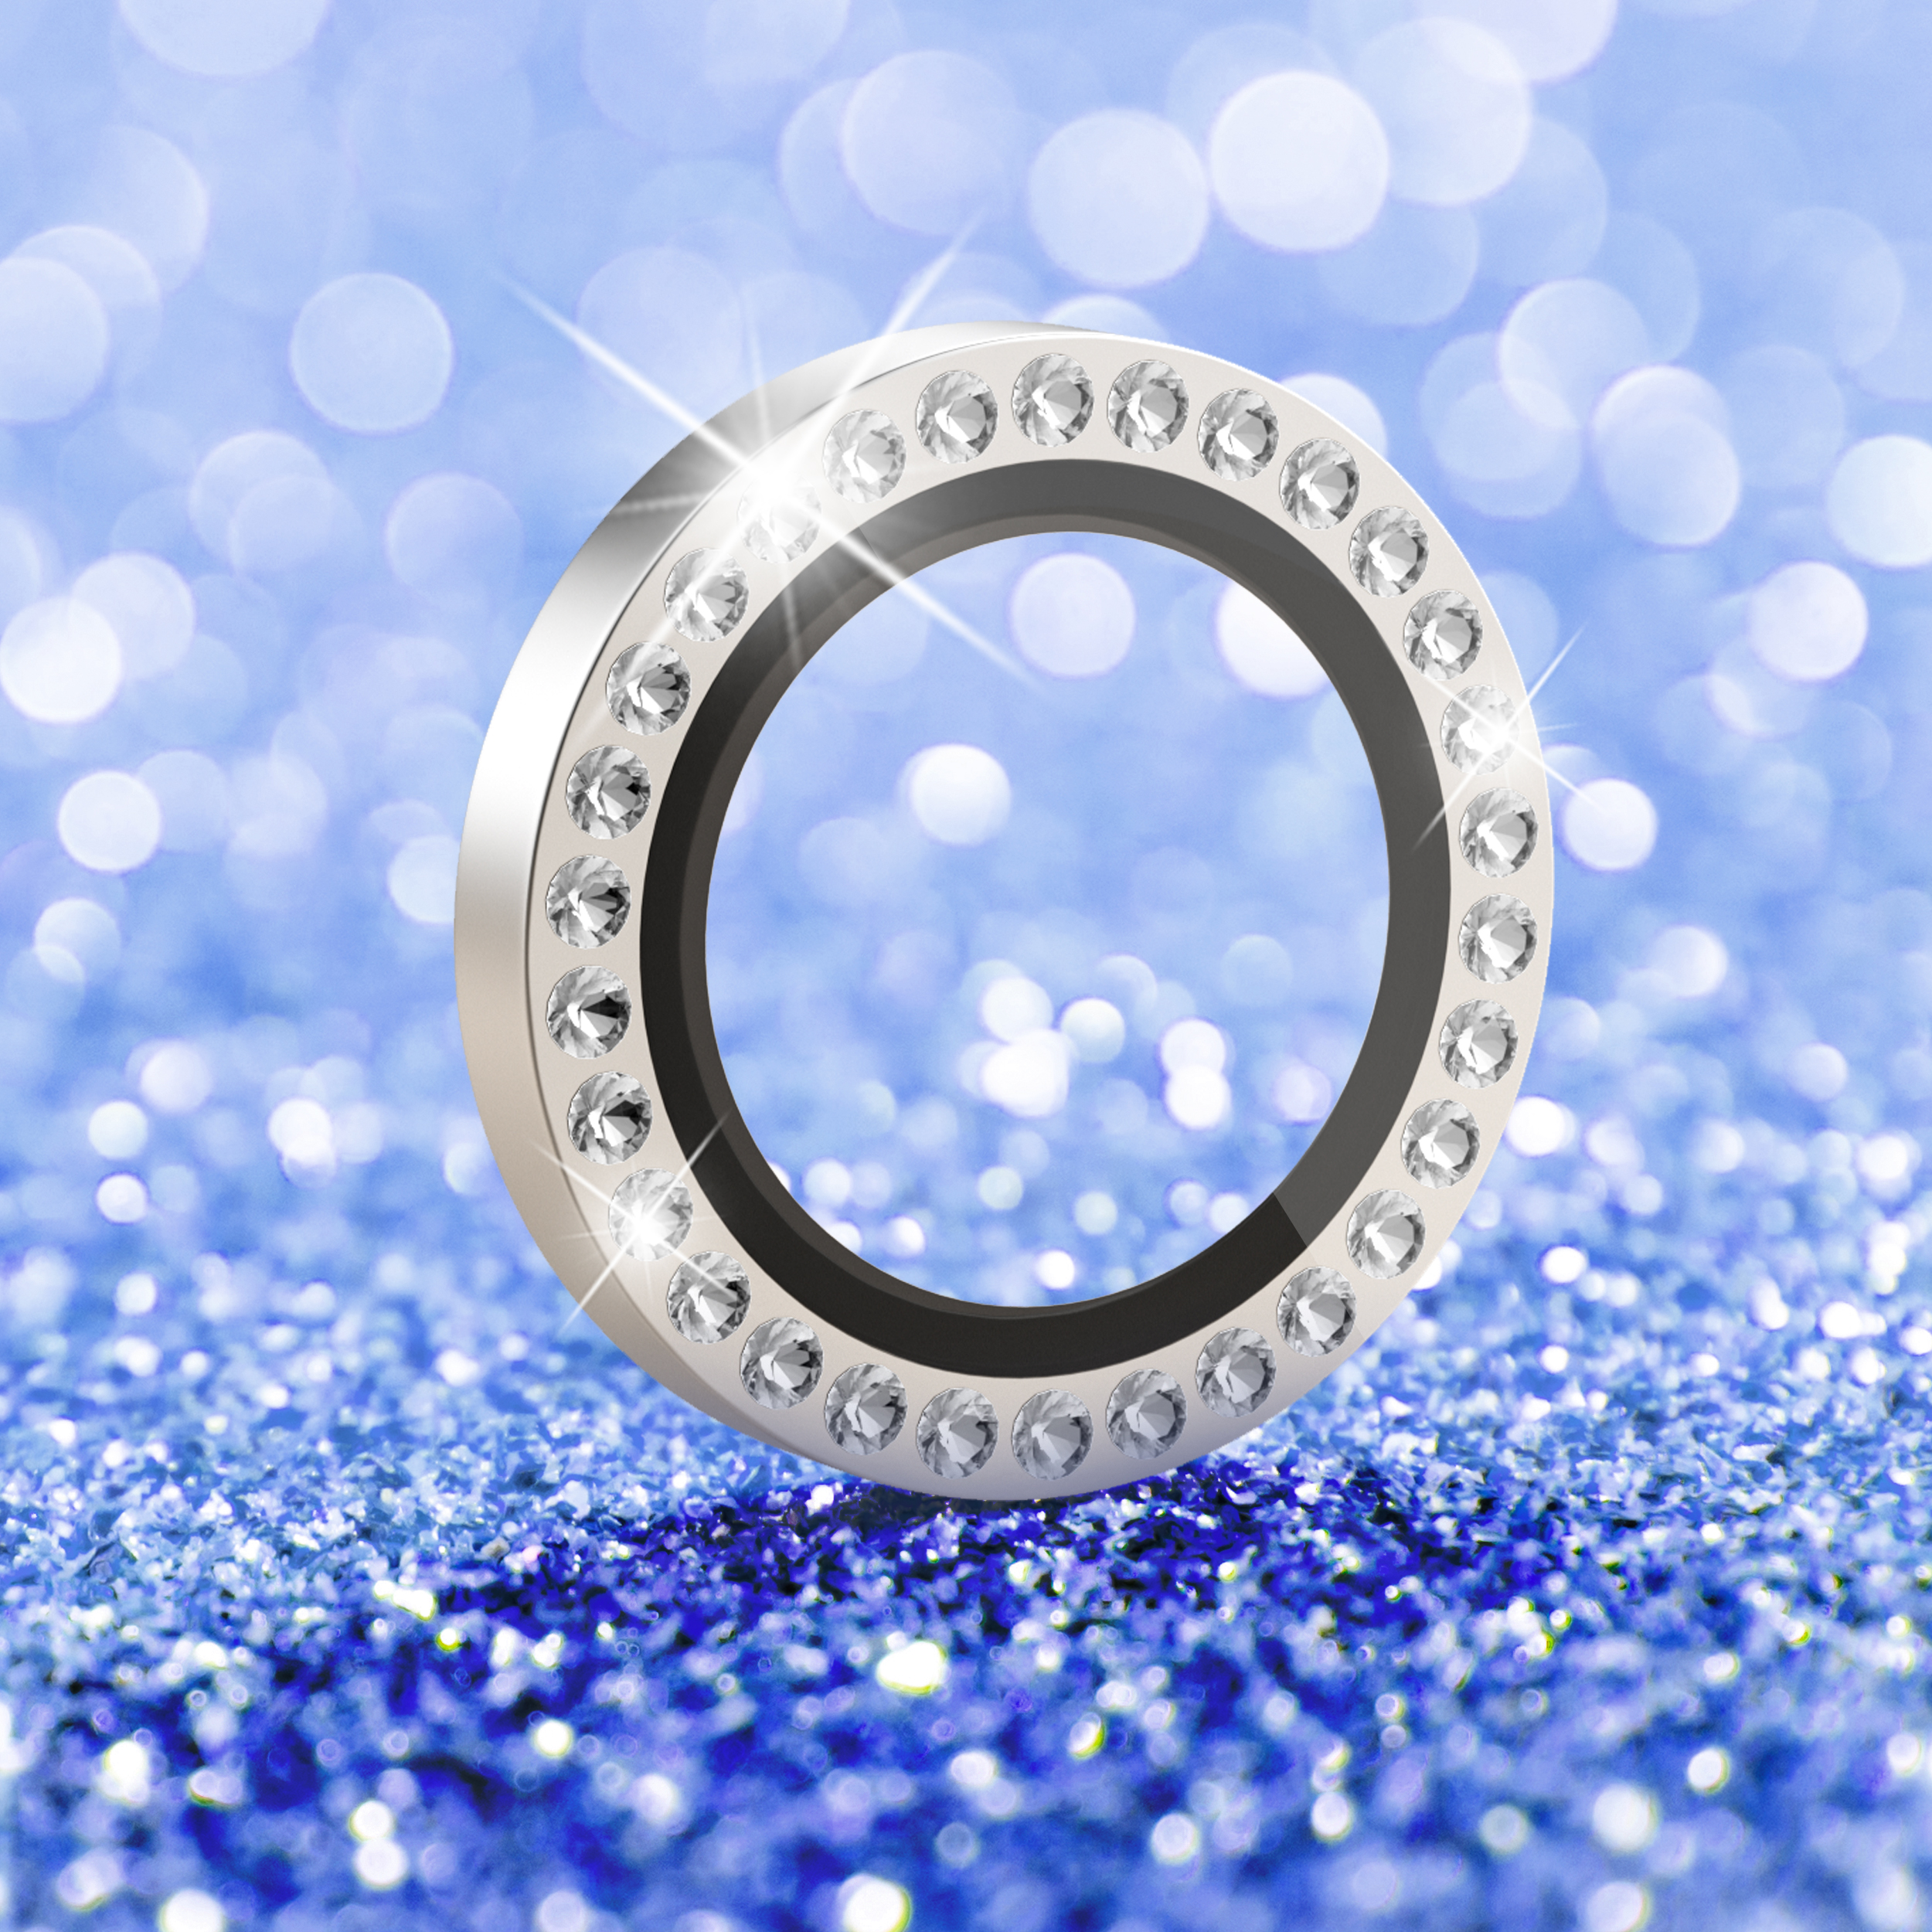 패션 OEM 오스트리아 다이아몬드 다채로운 긁힘 방지 강화 유리 아이폰 카메라 렌즈 보호 장치